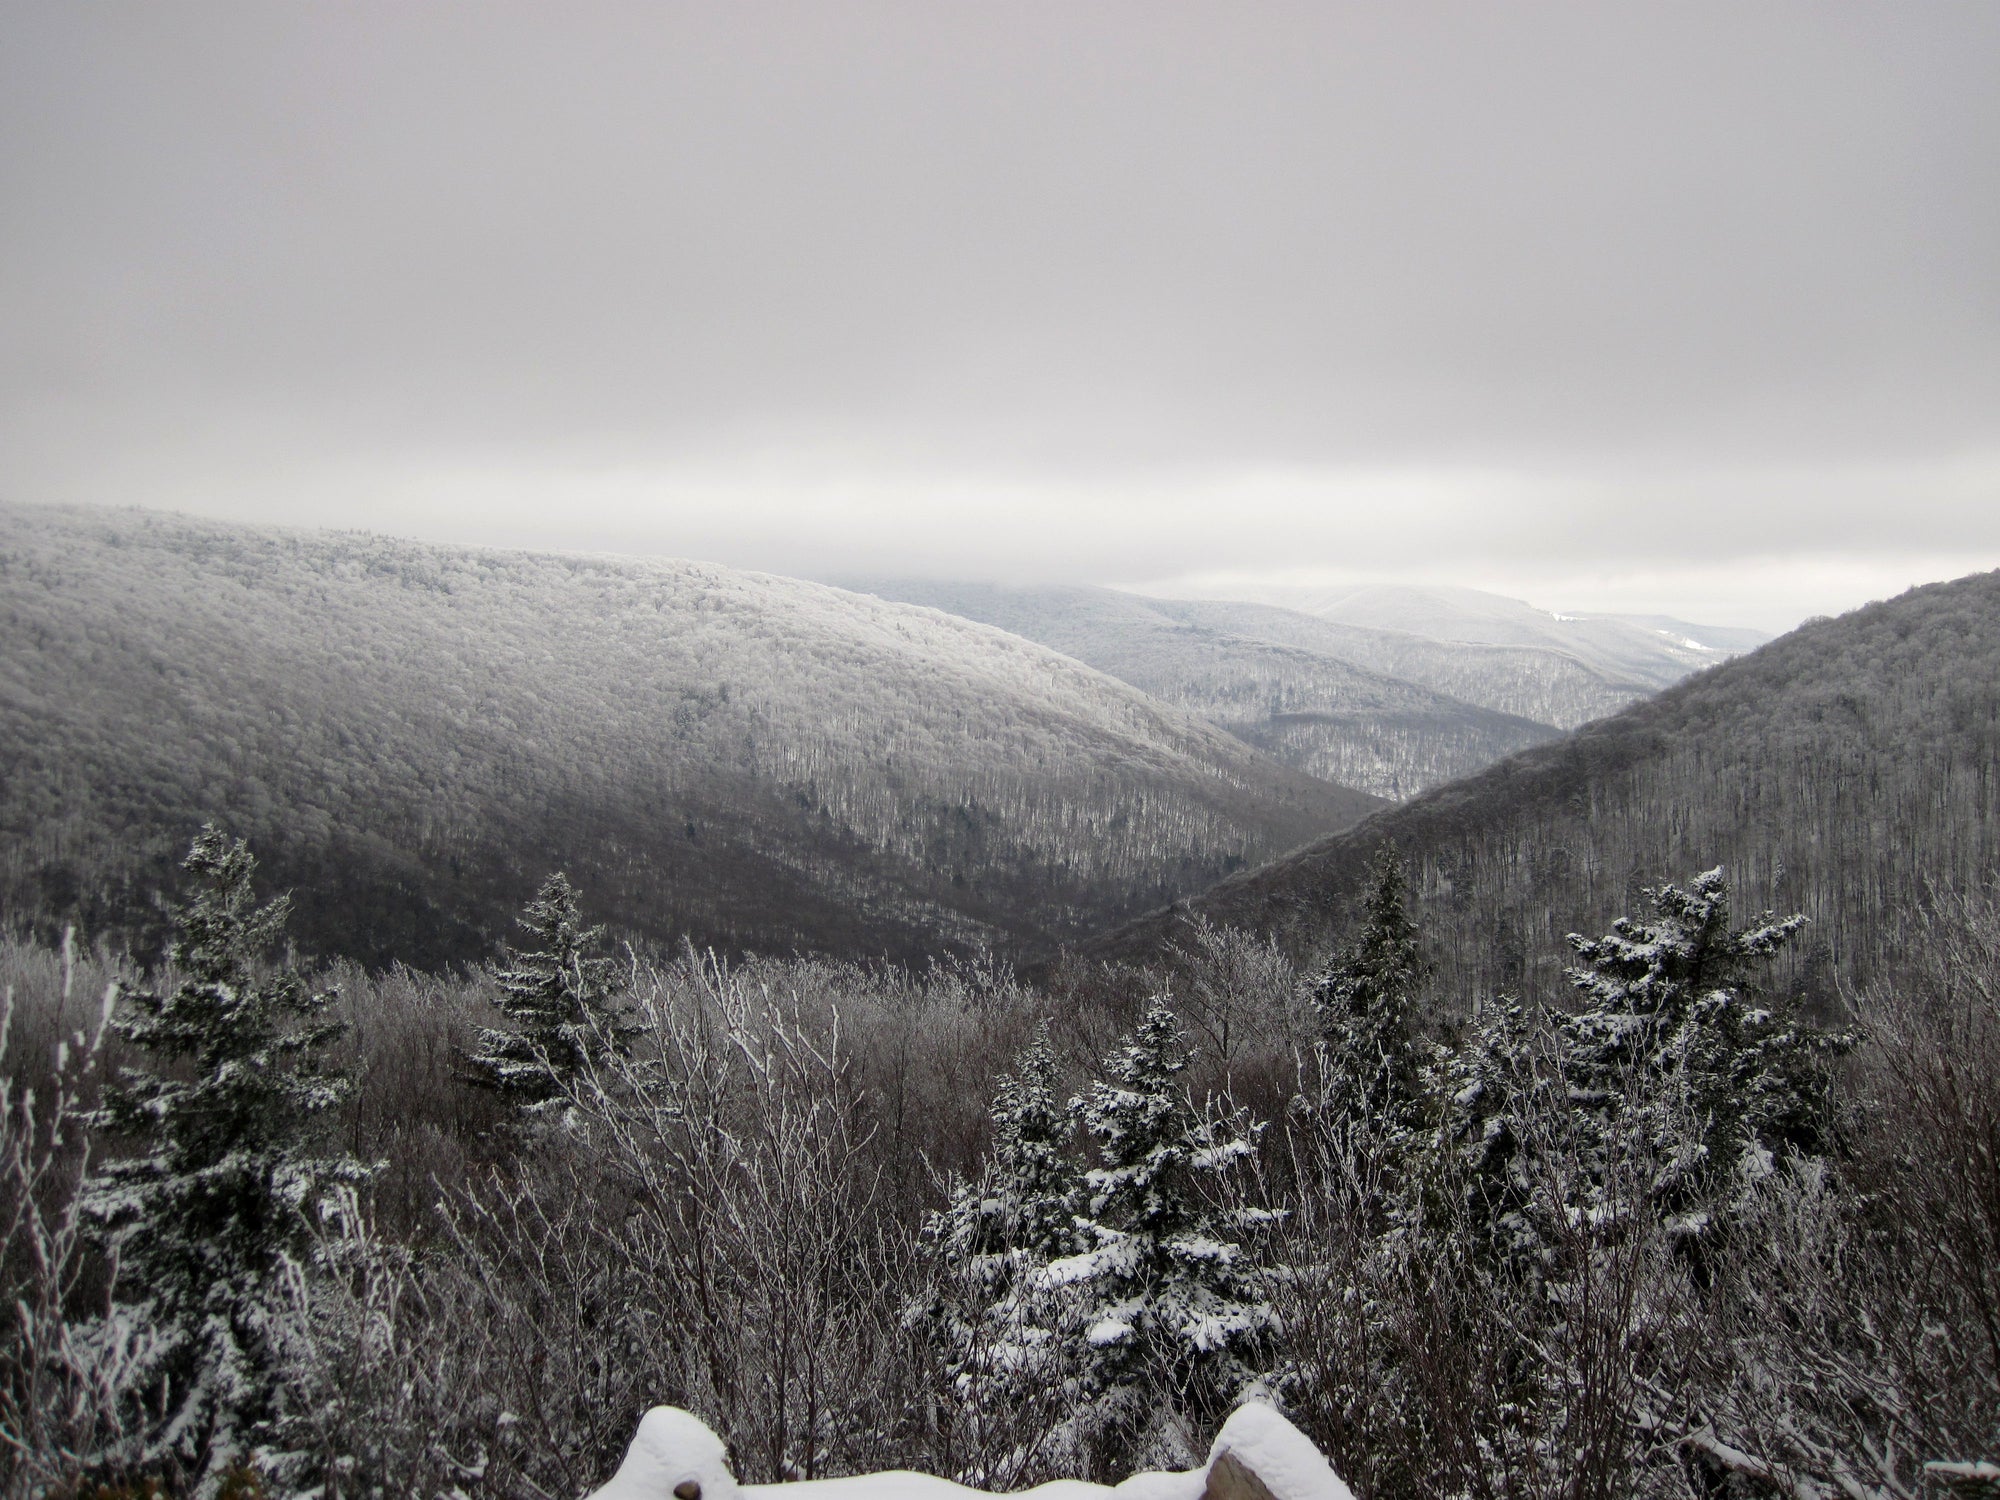 Winter Wonderland: Dolly Sods Wilderness, West Virginia